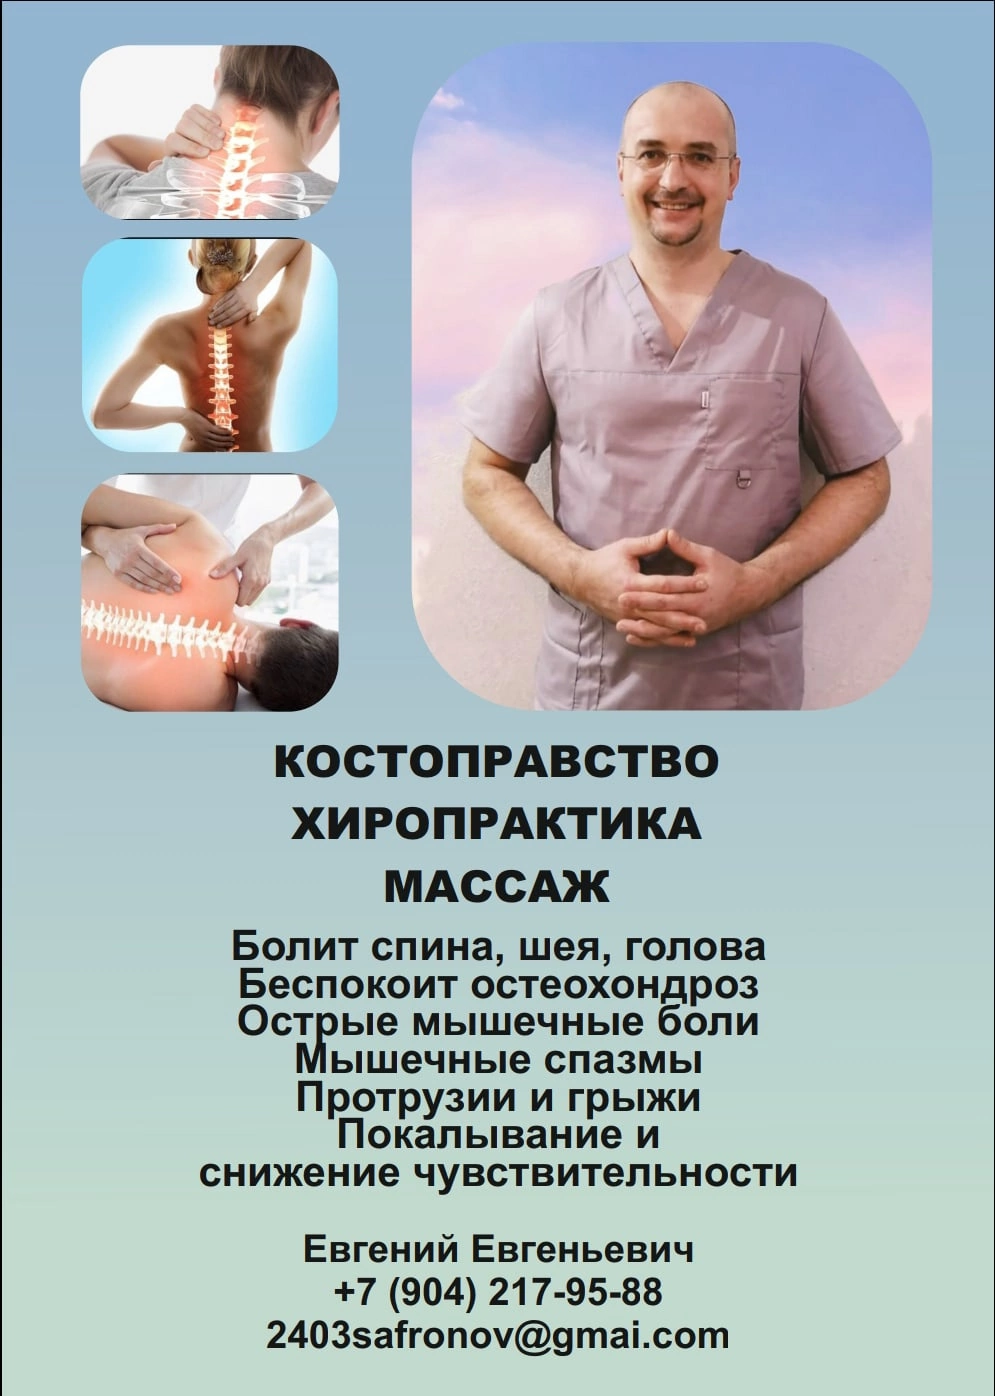 Объявление с Фото - Костоправ в СПБ